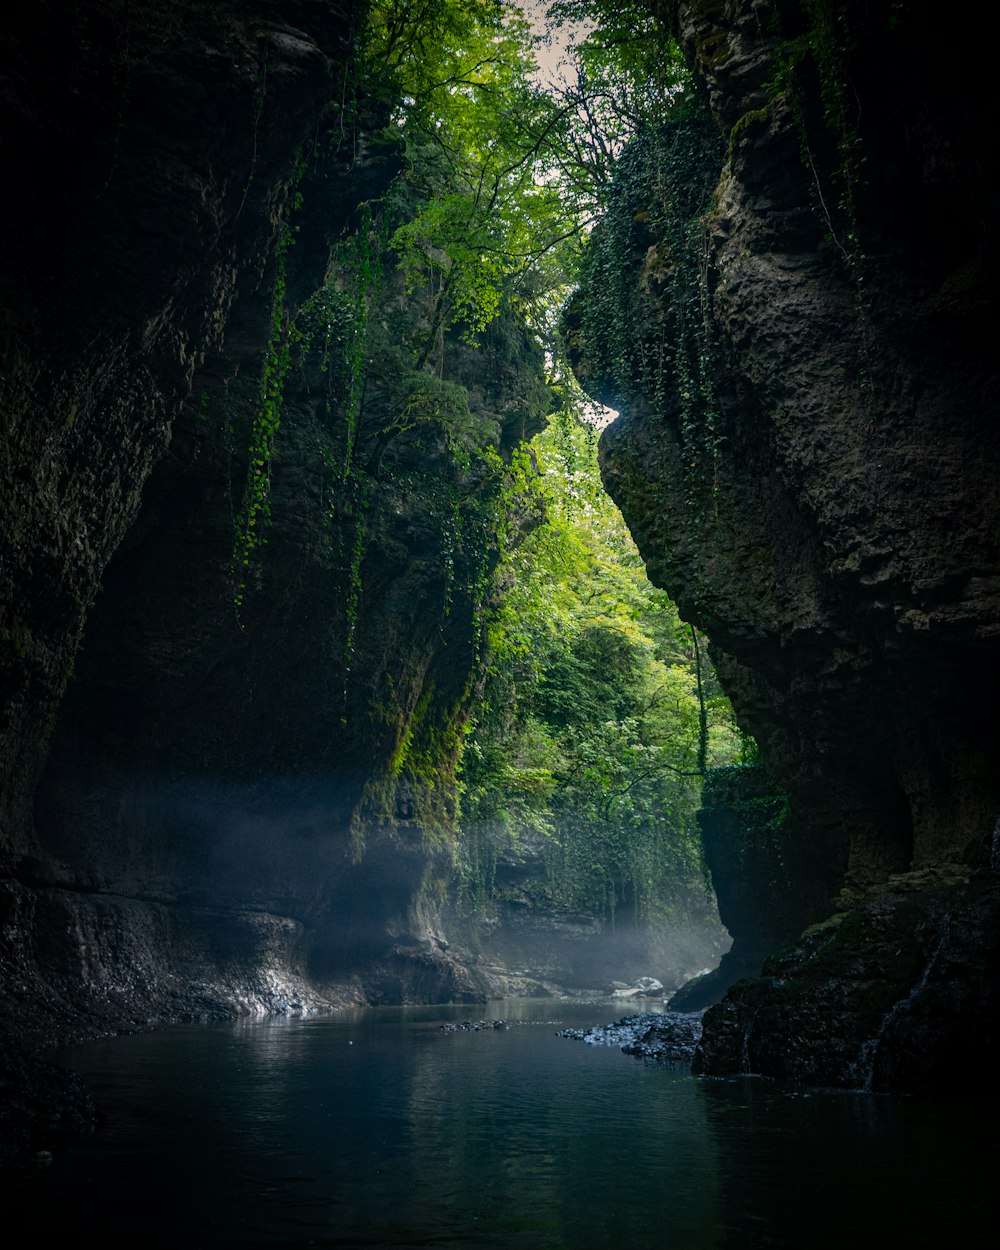 L’eau tombe entre les rochers couverts de mousse verte